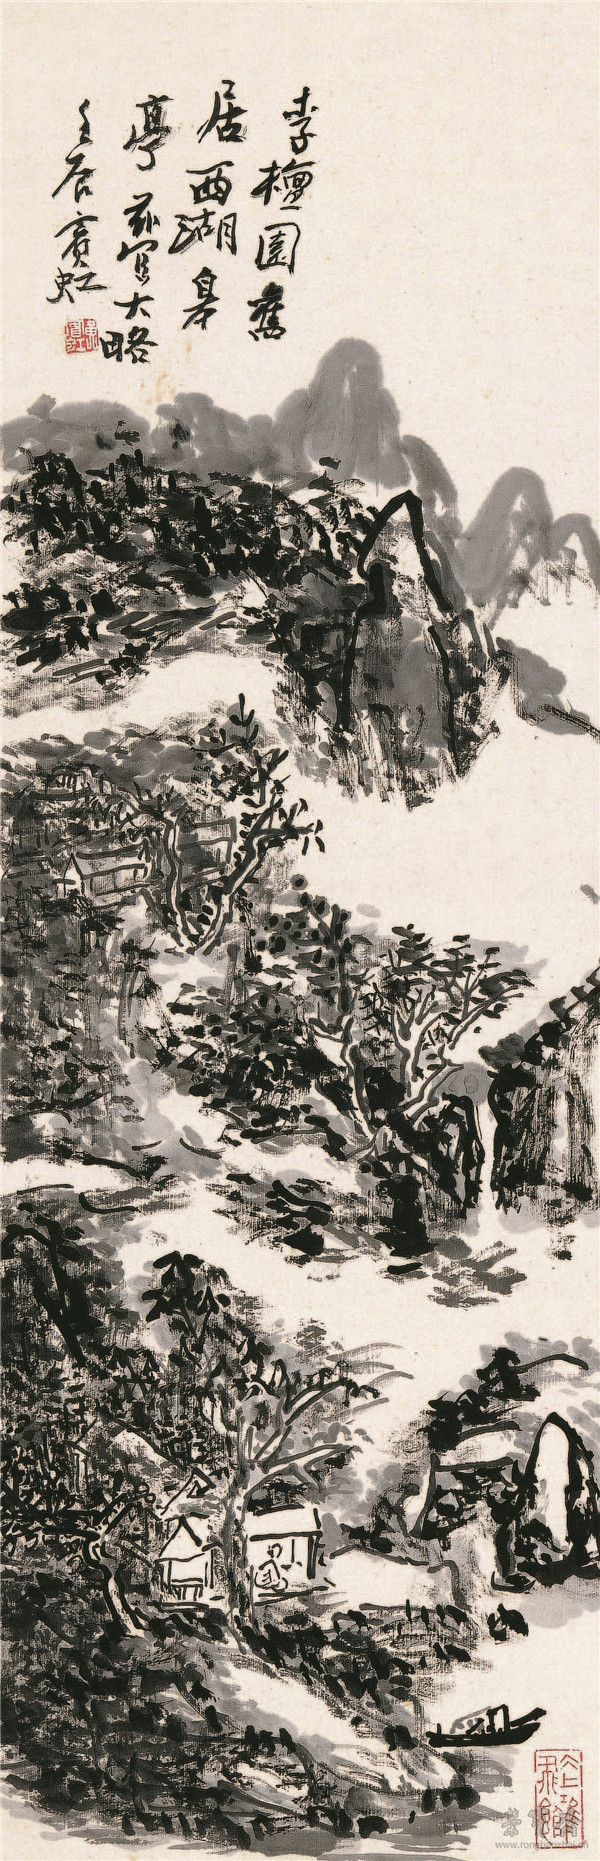 黄宾虹 西湖皋亭 94.2cm×30.6cm 纸本水墨 1953年 中国美术馆藏